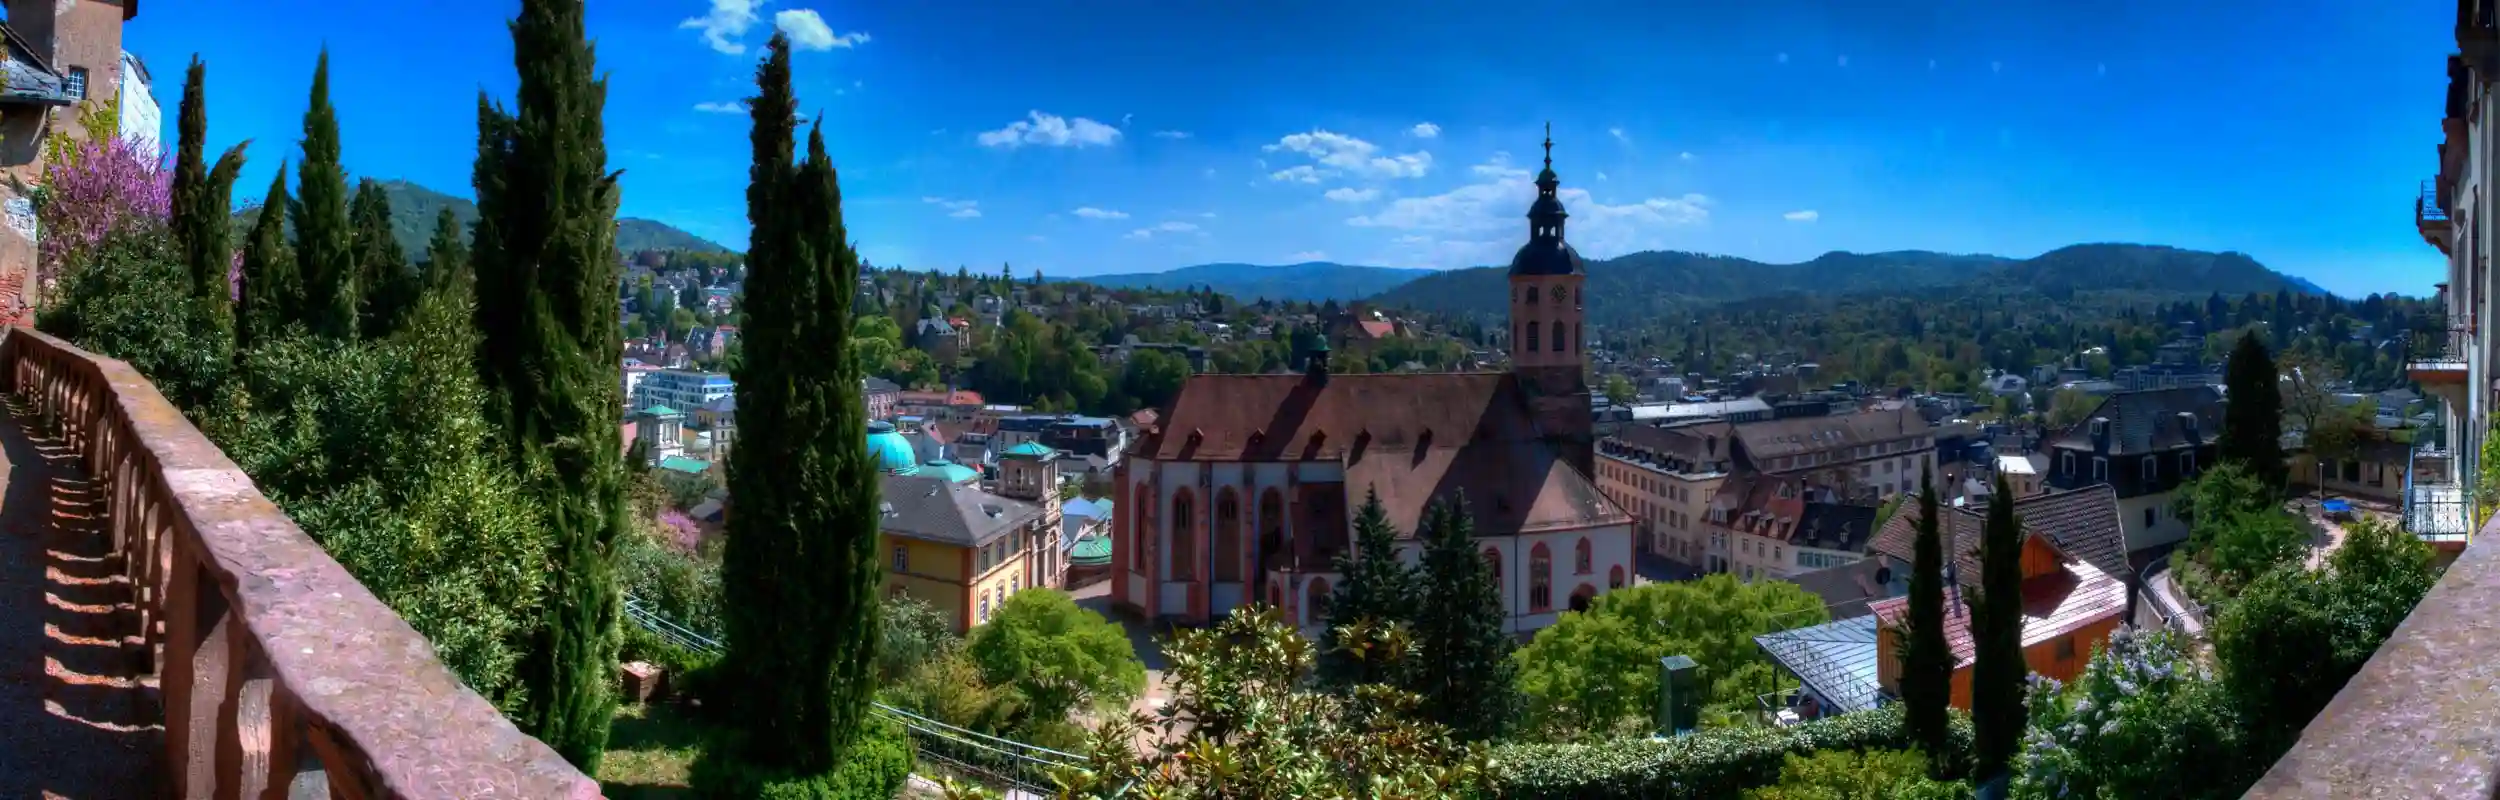 Baden-Baden-Zahnartz